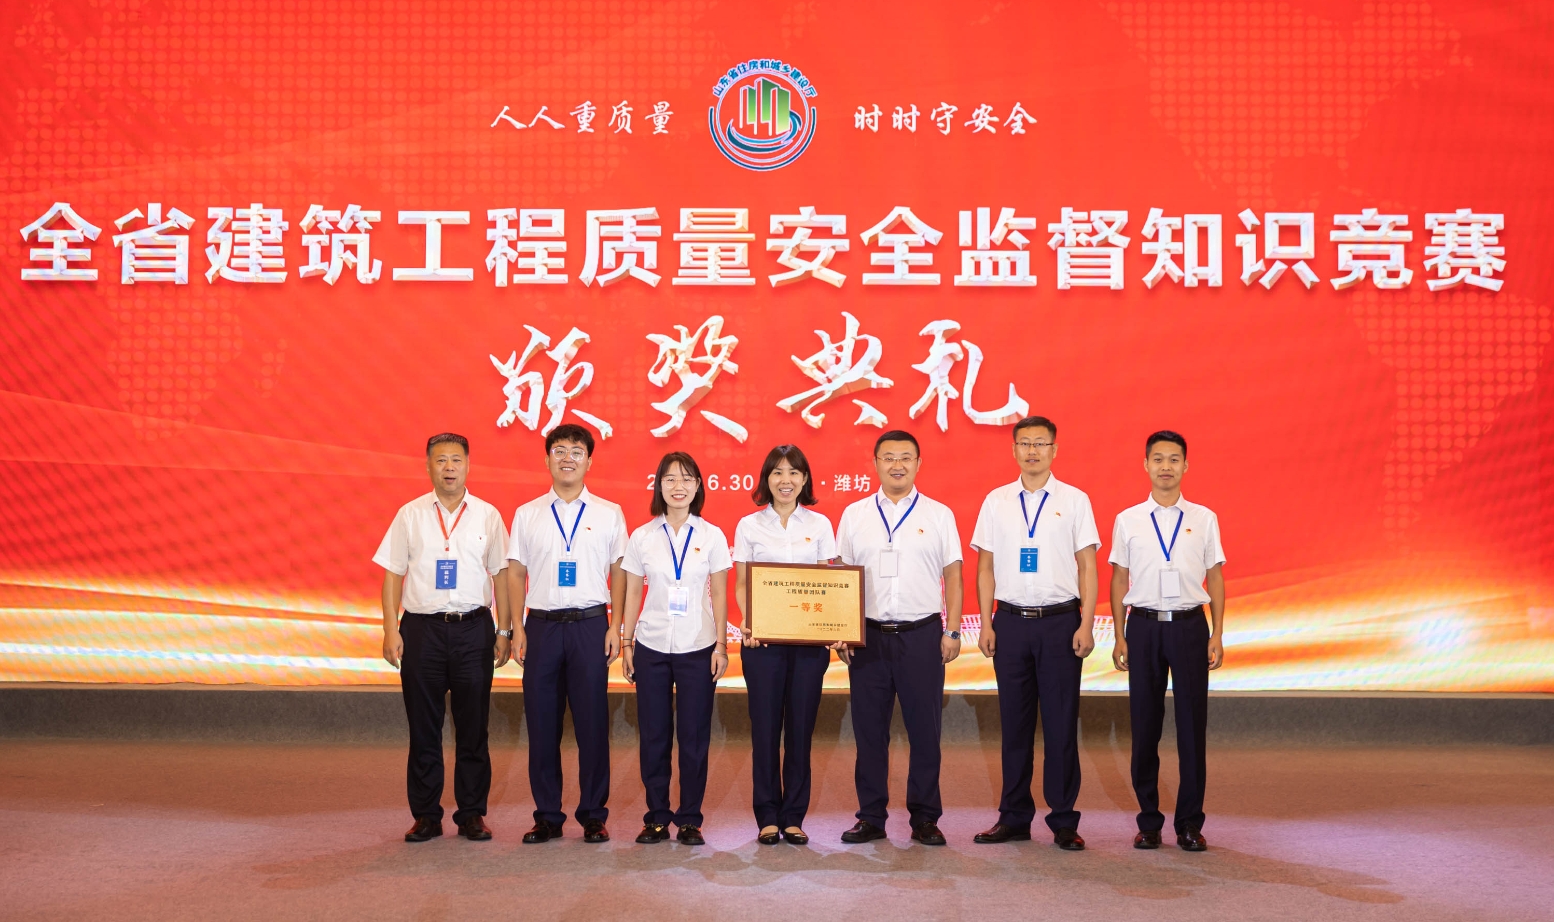 集团员工参加全省建筑工程质量安全监督知识竞赛荣获一等奖